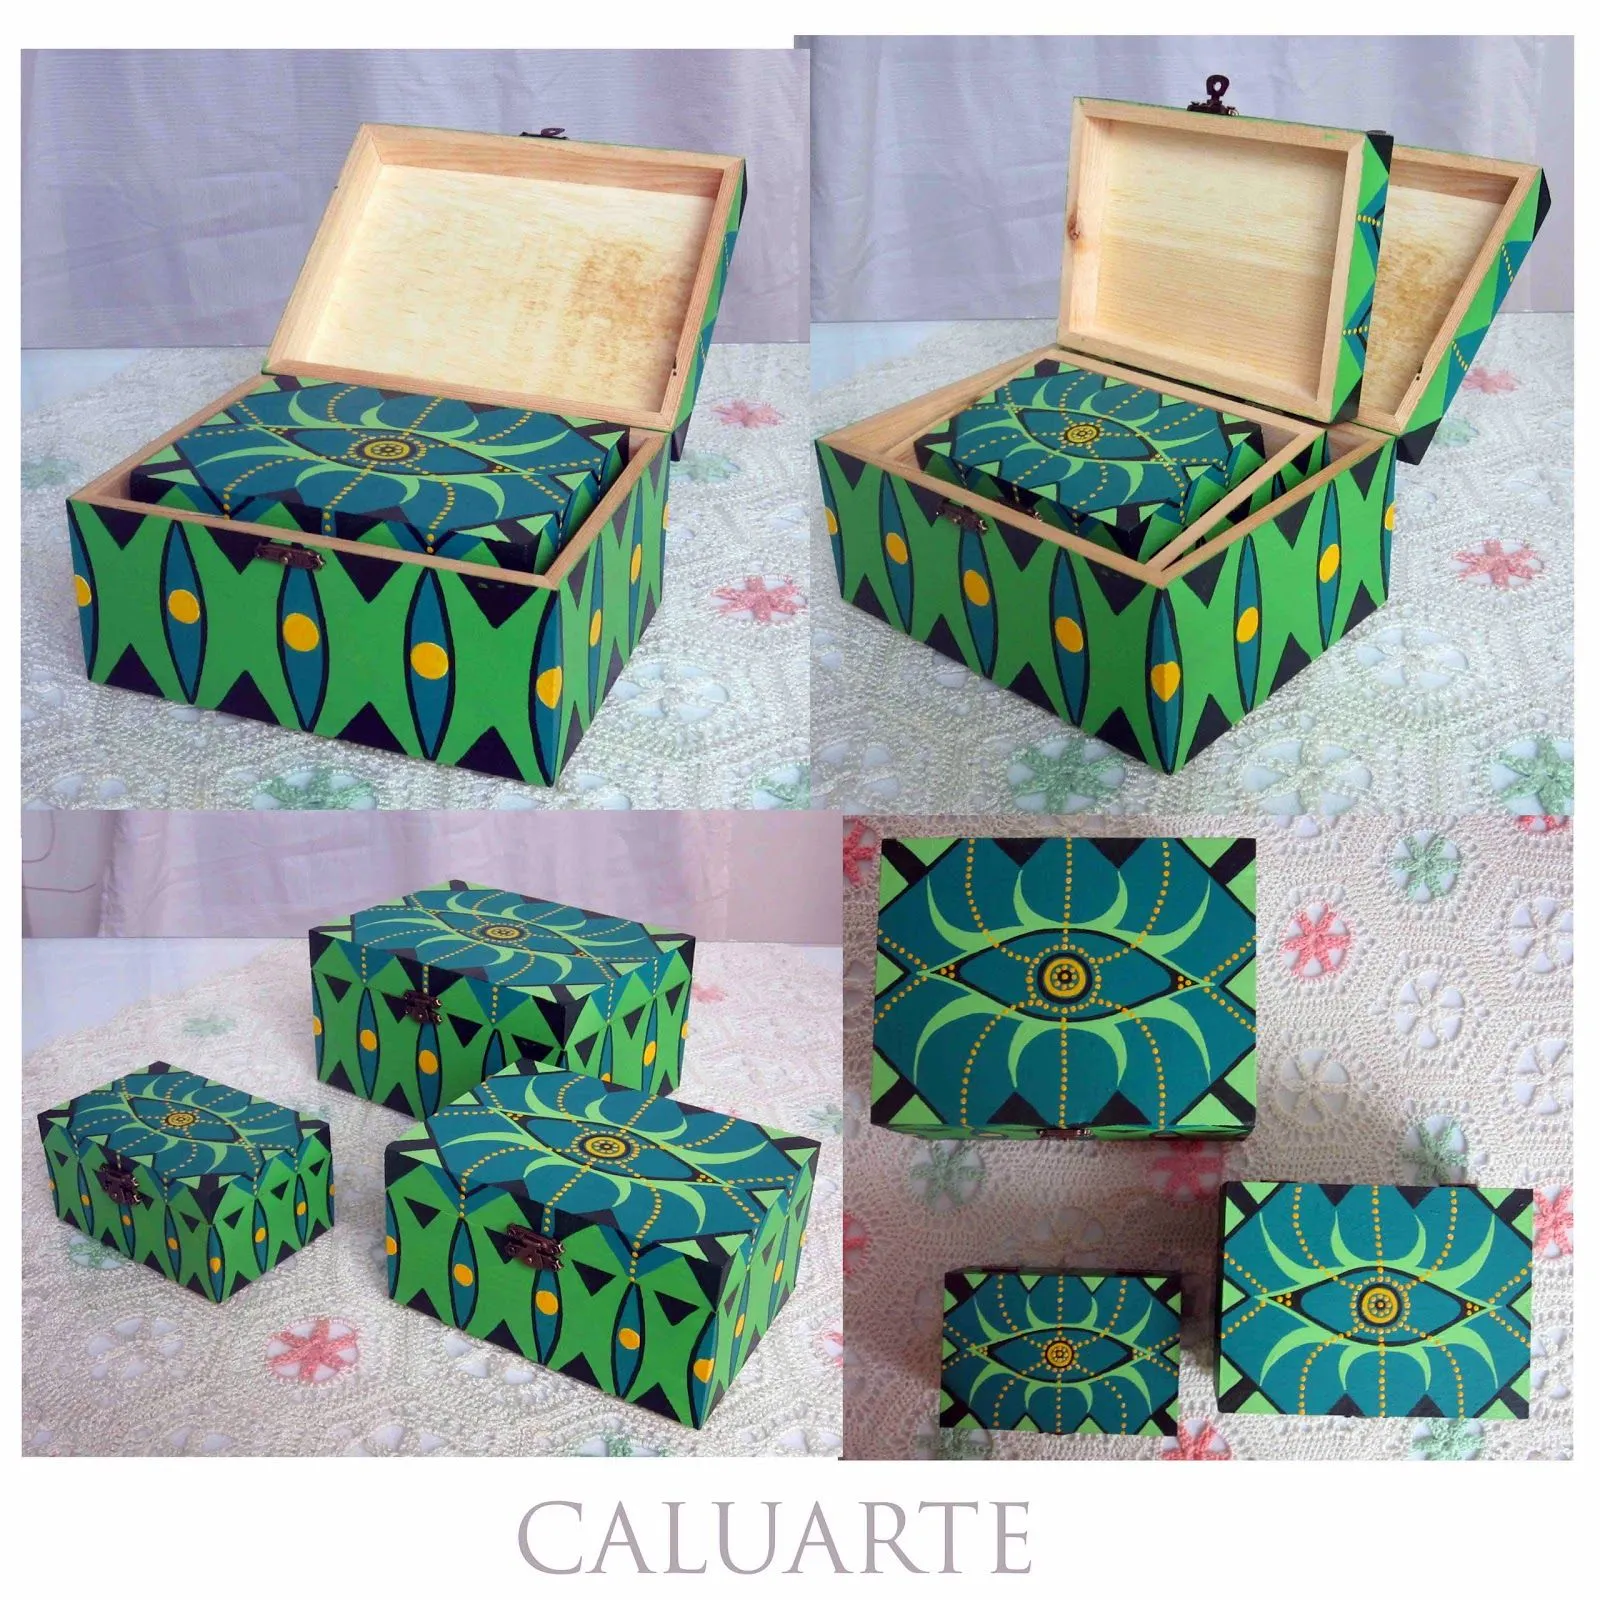 Caluarte: Conjunto de cajas de madera pintadas a mano.